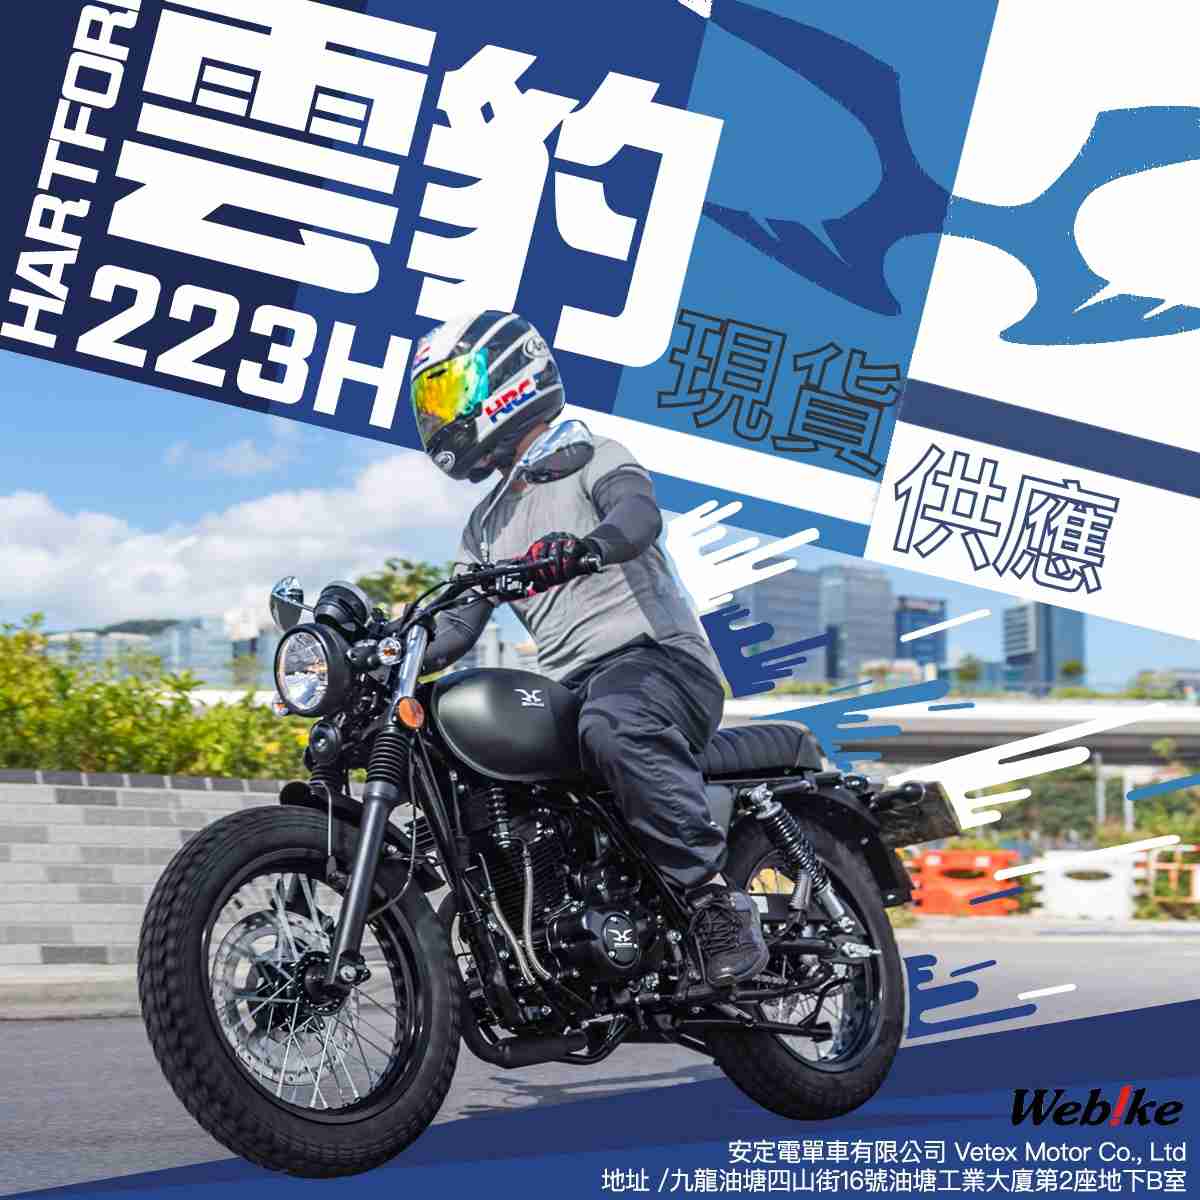 安定電單車有限公司vetex Motor Co Ltd New Motorcycle 雲豹hd 223 Fi 電單車資訊 Webike摩托服務